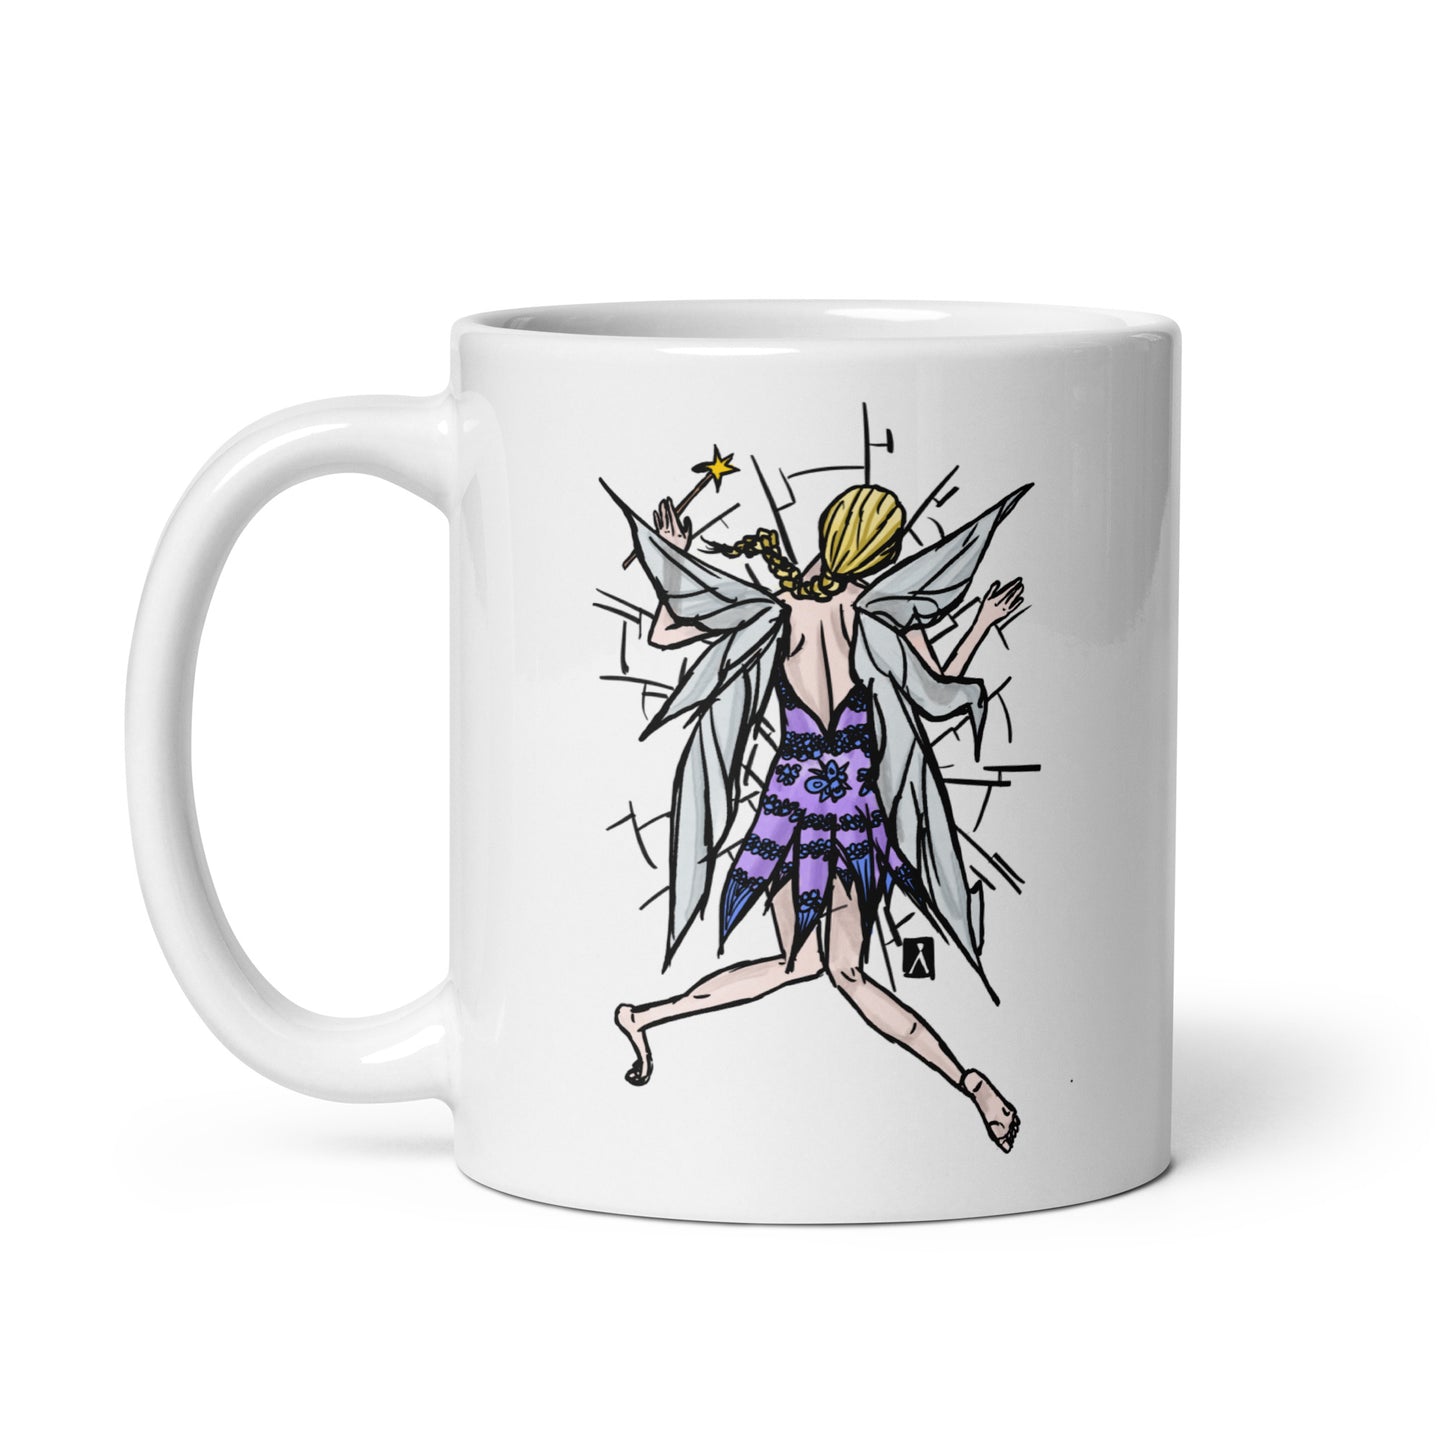 BellavanceInk: Coffee Mug With A Magical Fairy Splatting Into A Coffee Mug